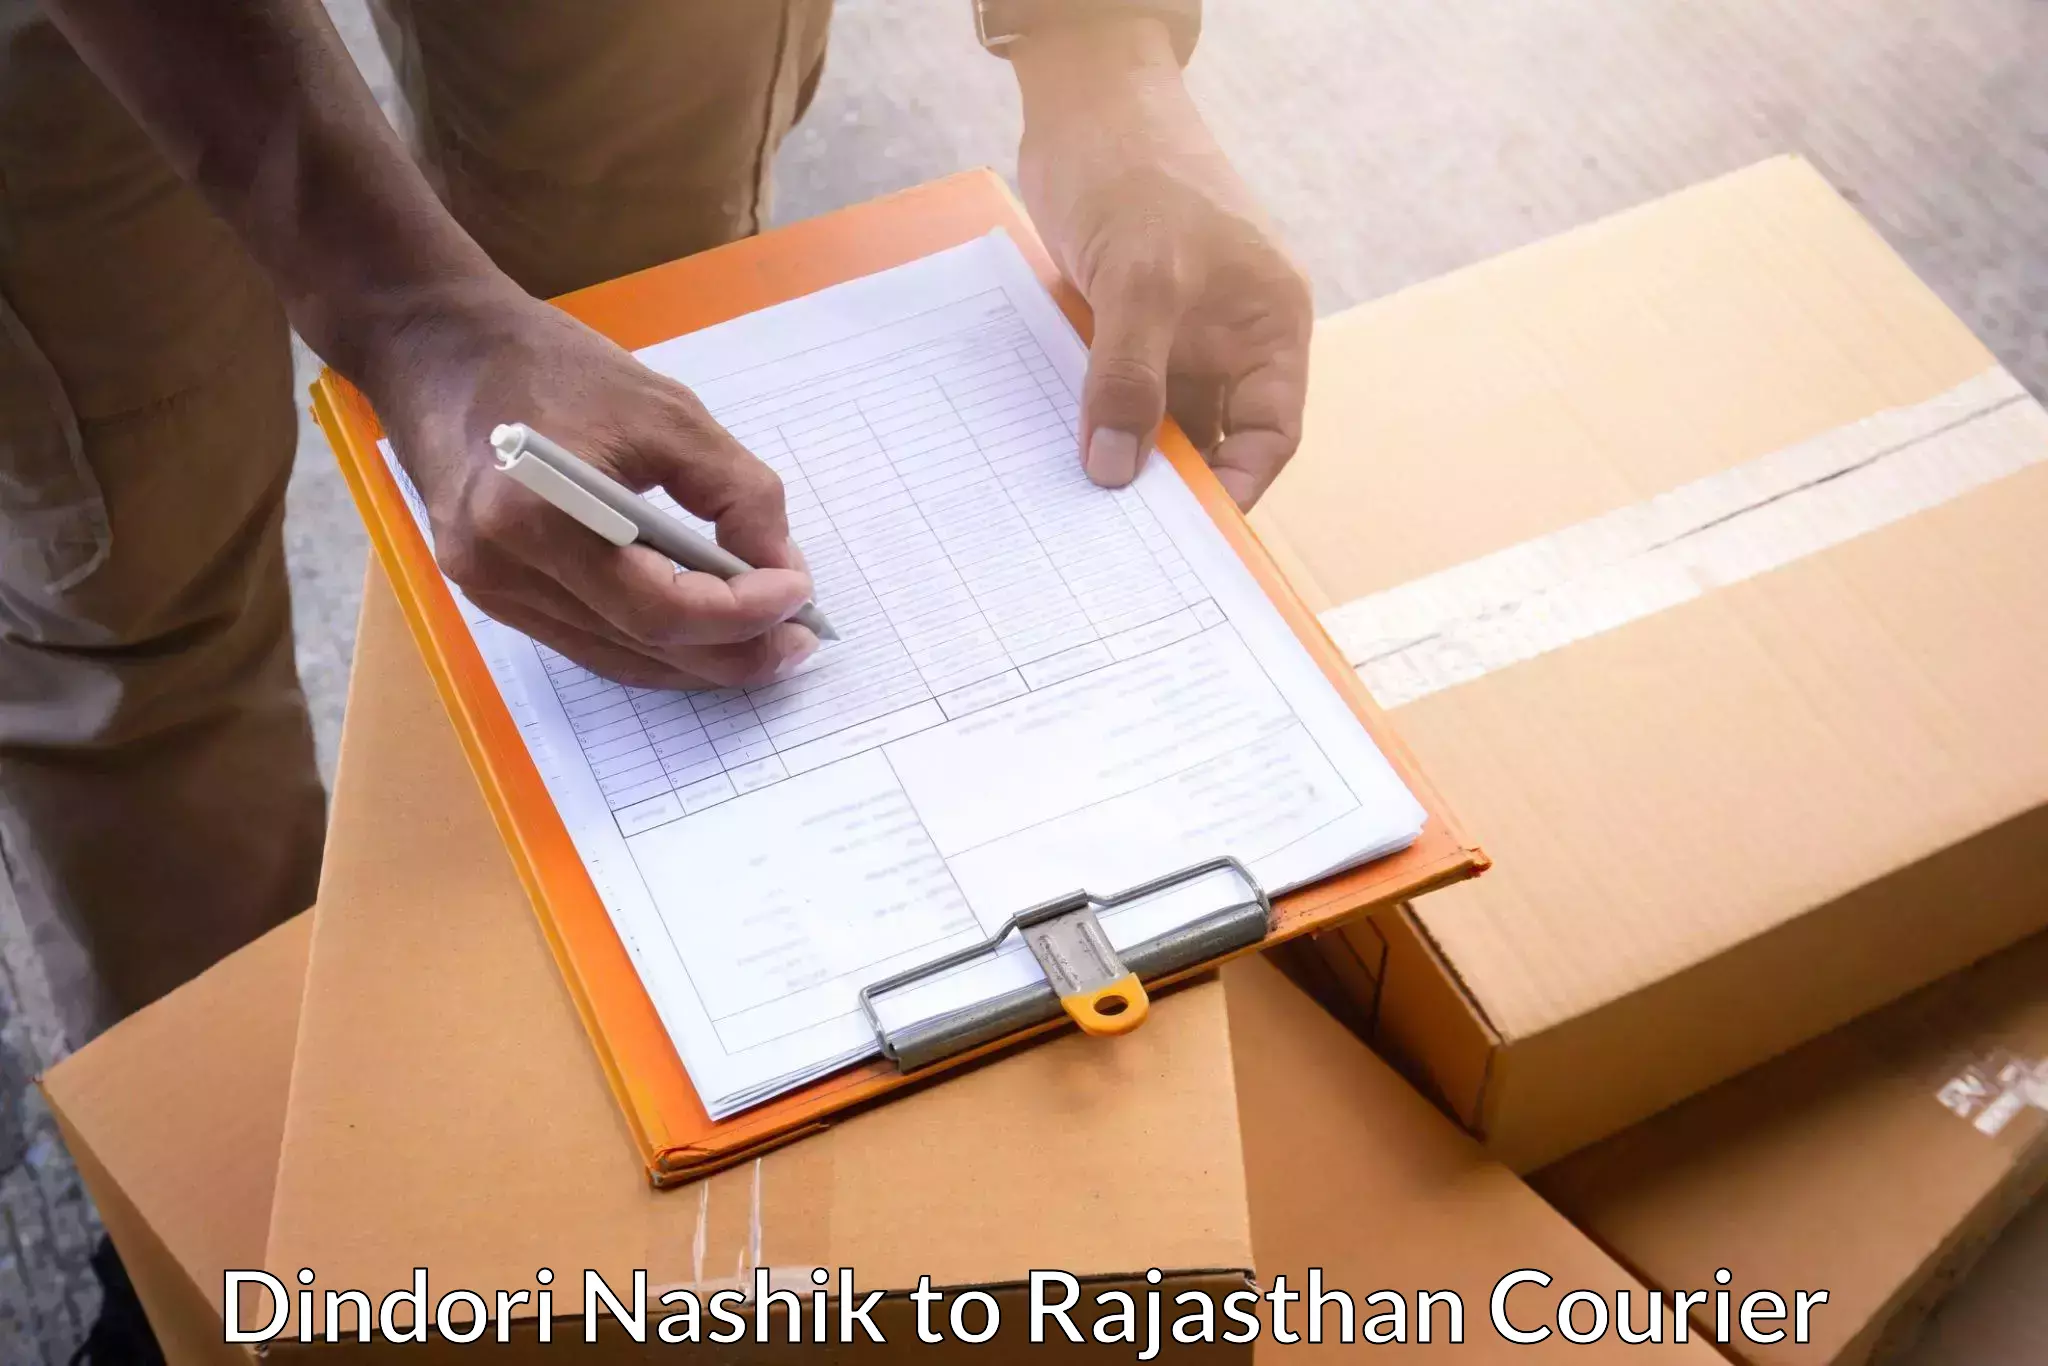 High-priority parcel service Dindori Nashik to Rajasthan